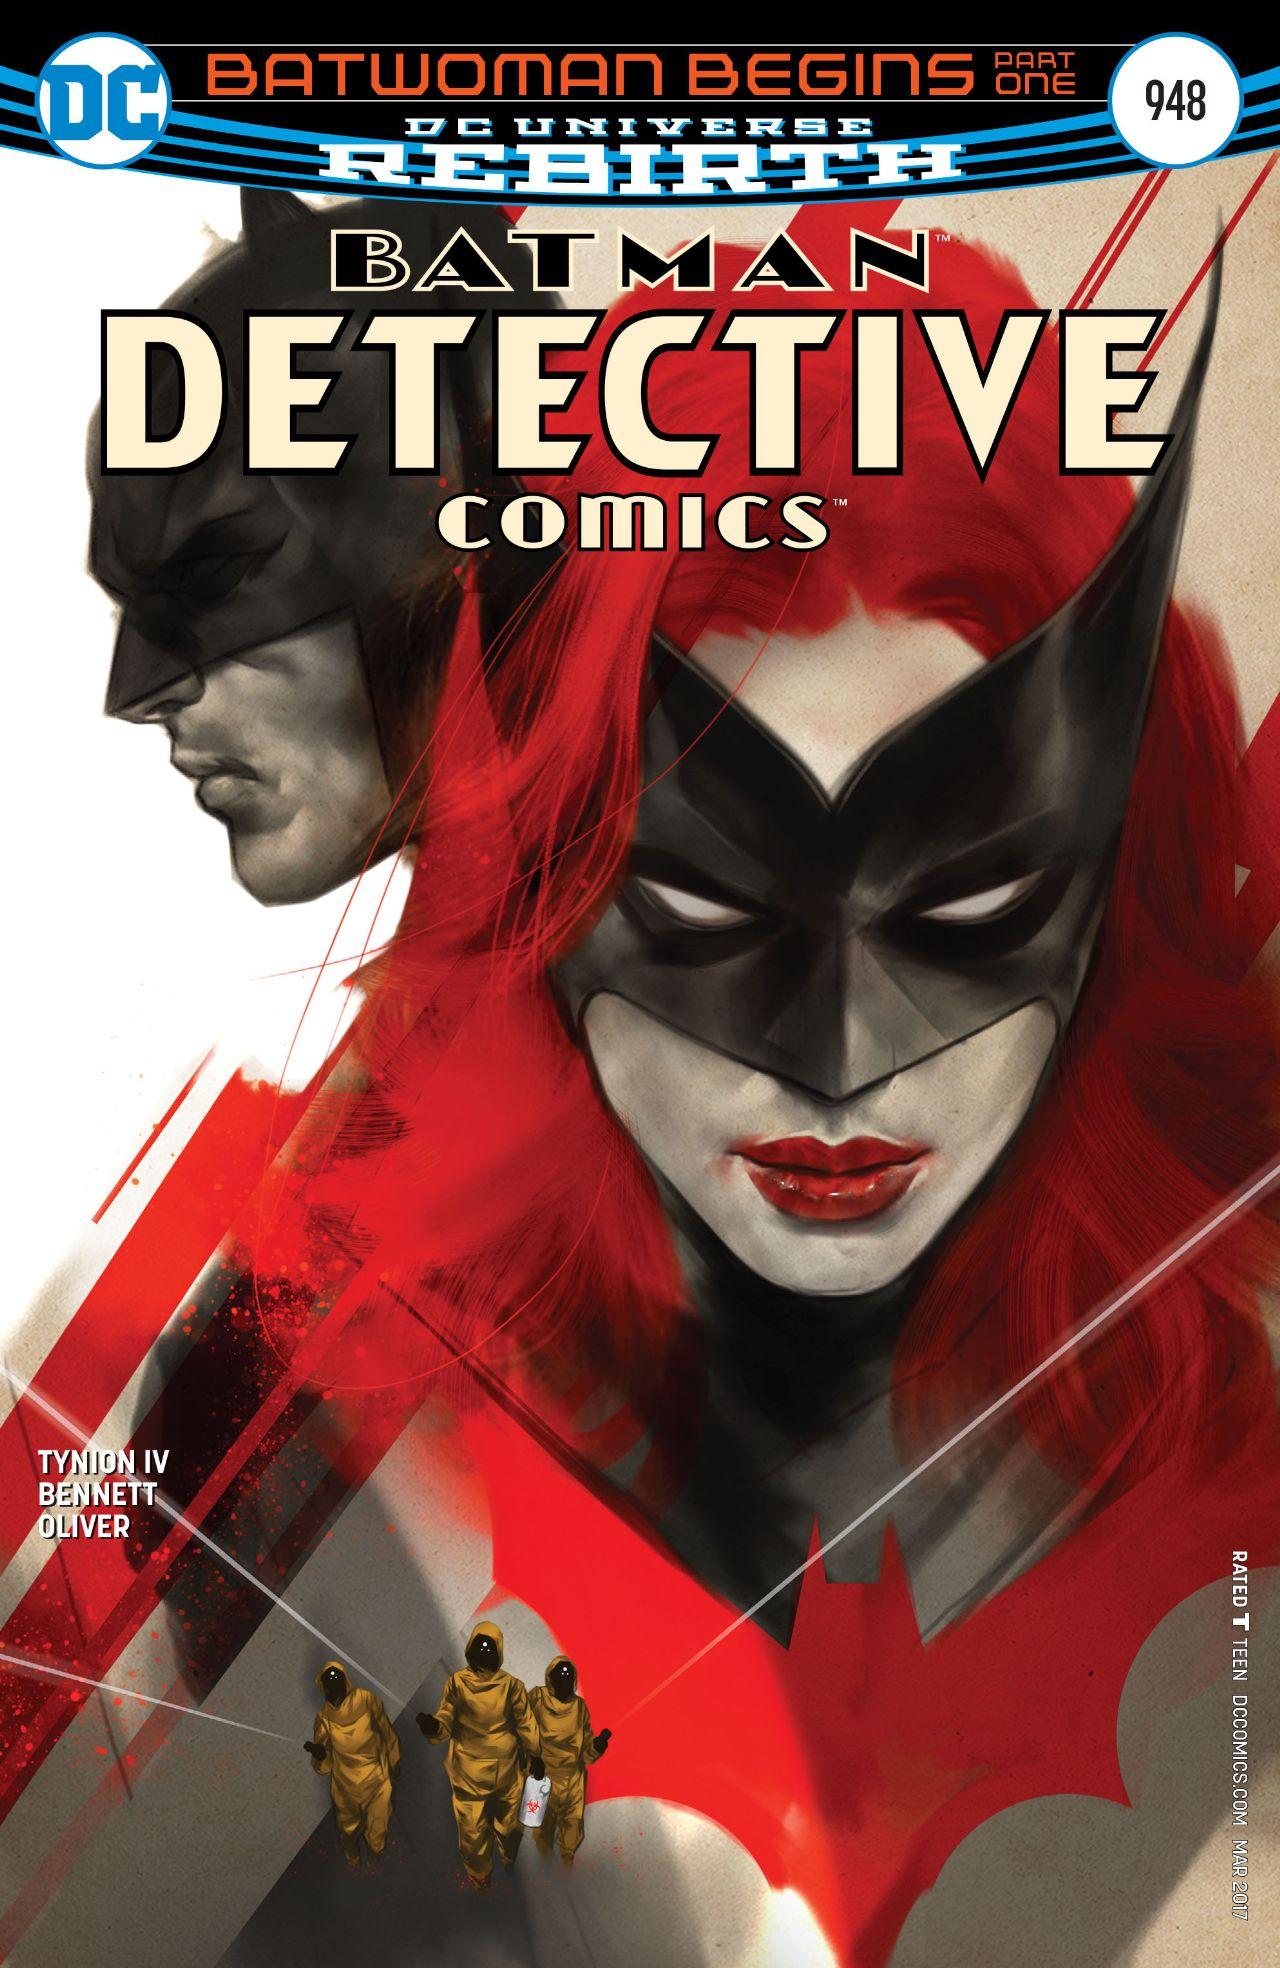 Detective Comics Vol. 1 #948